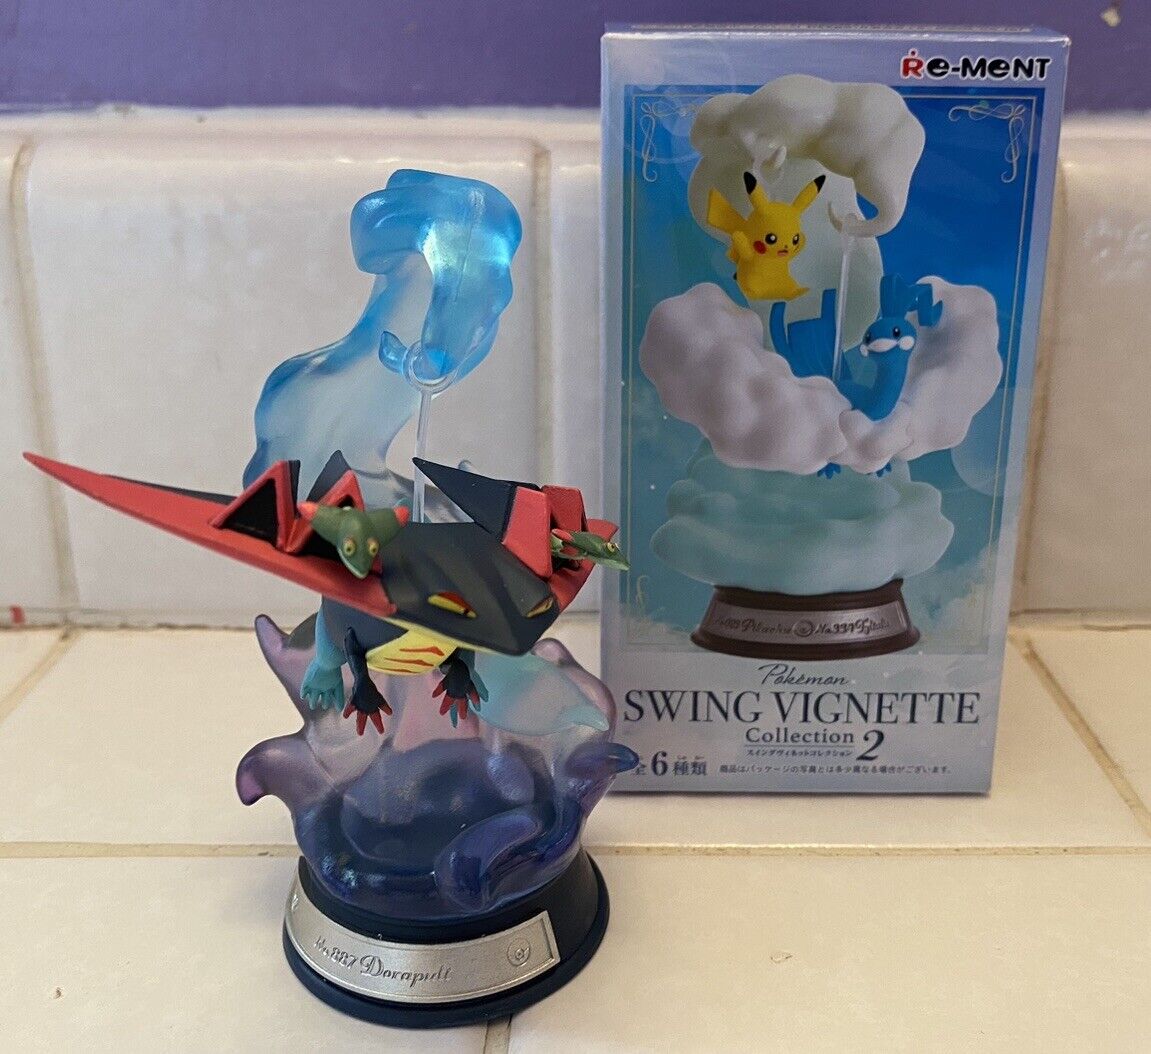 RE-MENT Pokemon Swing Vignette Collection 2 Mini Toy Figure 6 Dragapult Dorapult